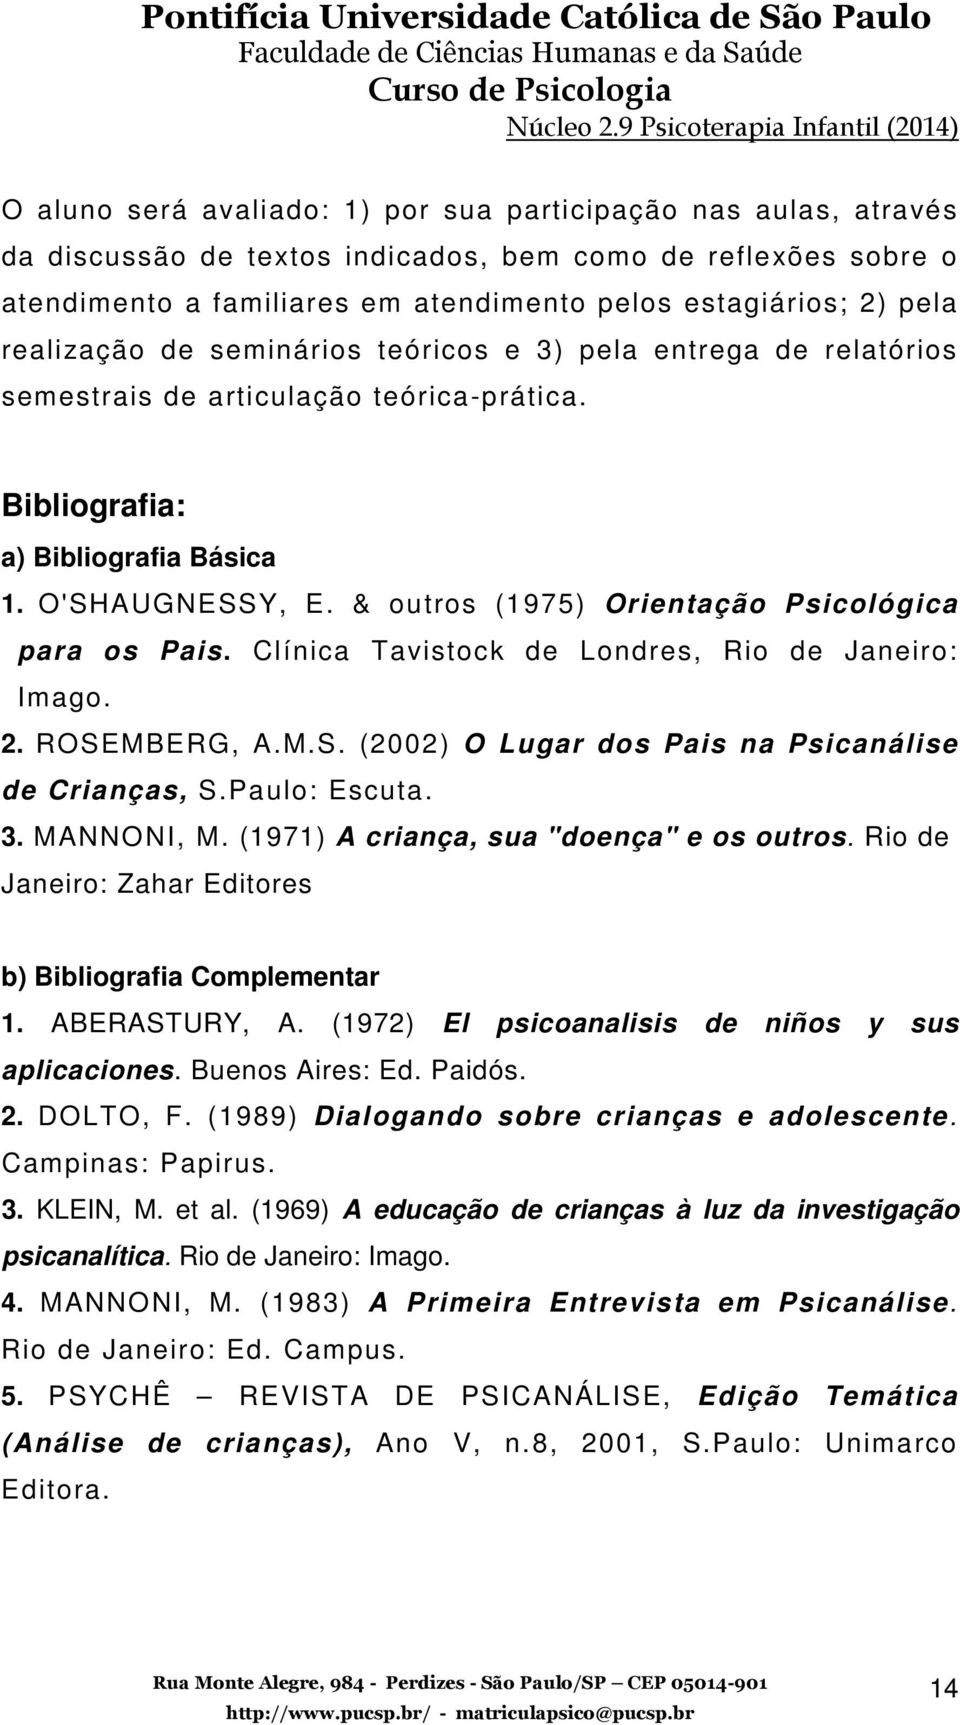 & outros (1975) Orientação Psicológica para os Pais. Clínica Tavistock de Londres, Rio de Janeiro: Imago. 2. ROSEMBERG, A.M.S. (2002) O Lugar dos Pais na Psicanálise de Crianças, S.Paulo: Escuta. 3.